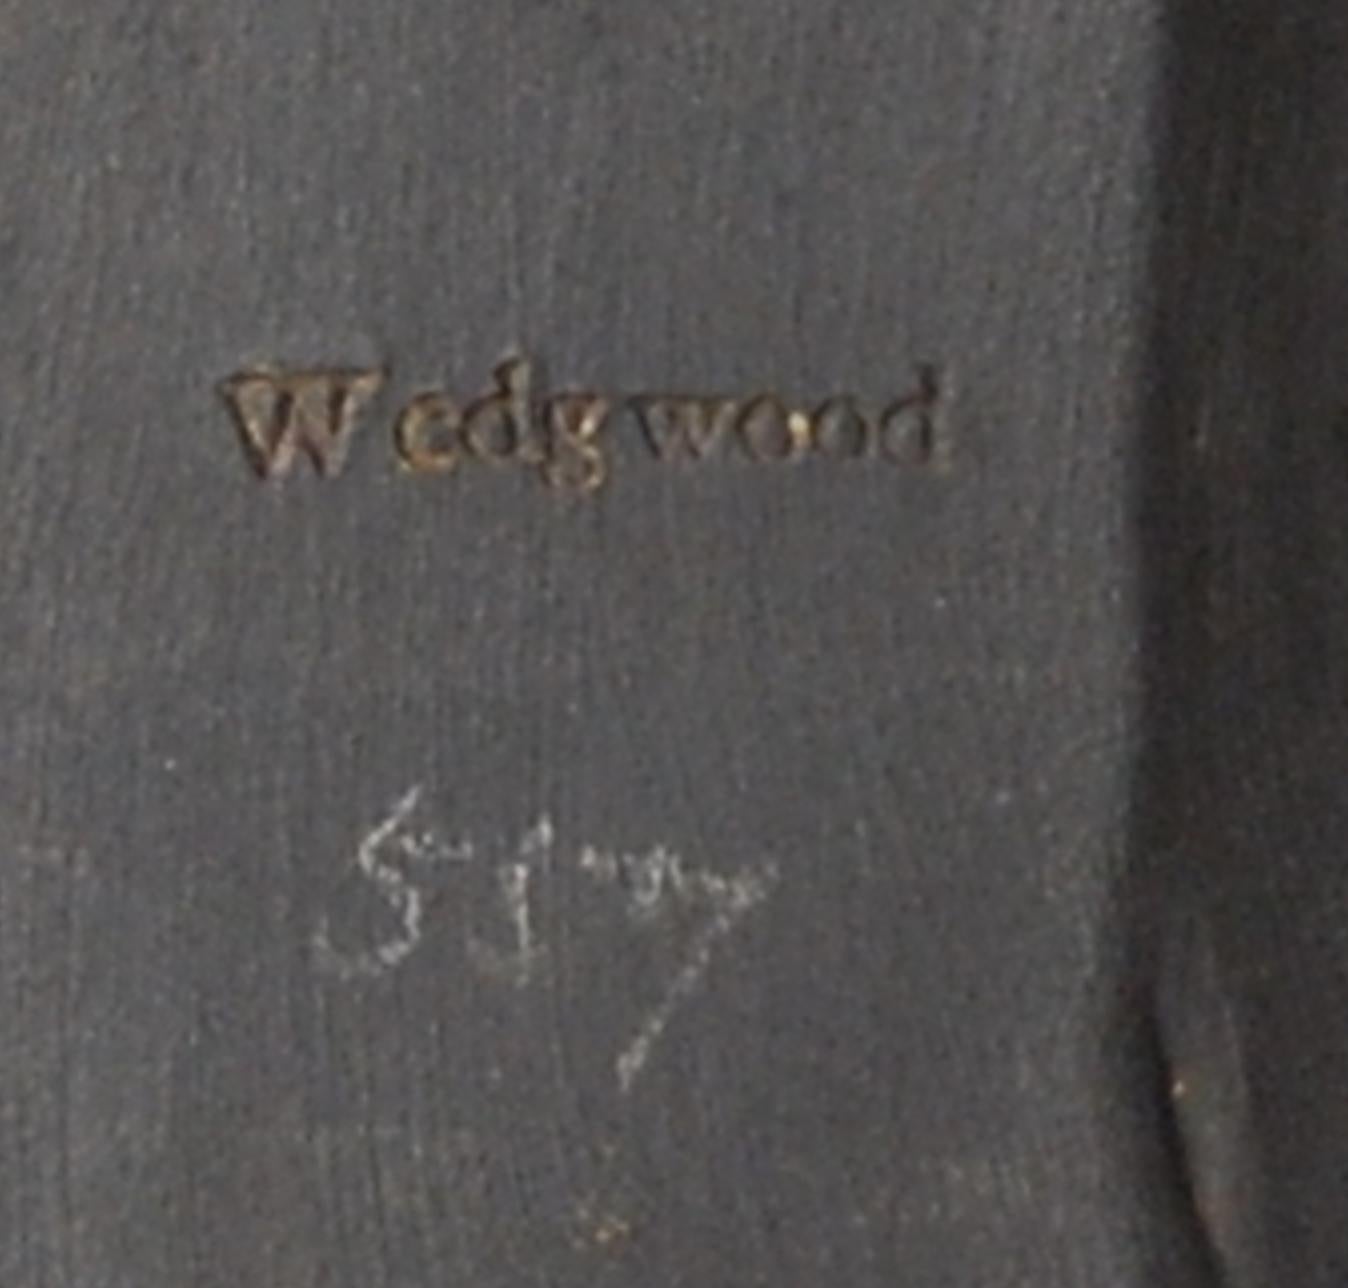 wedgwood mark dates